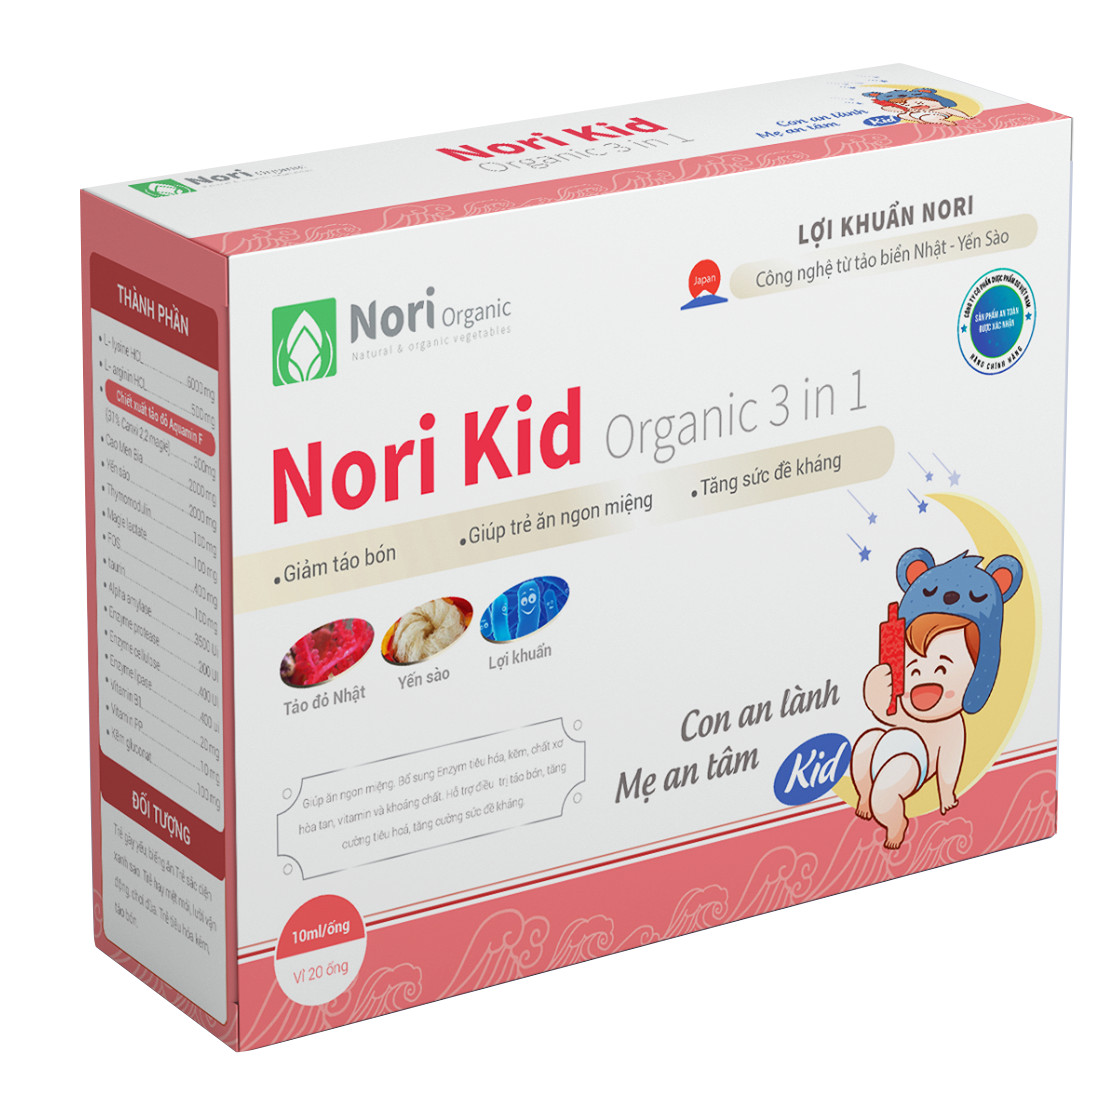 Combo 2 hộp Norikid - bổ sung chất xơ, hỗ trợ tiêu hóa, giảm táo bón